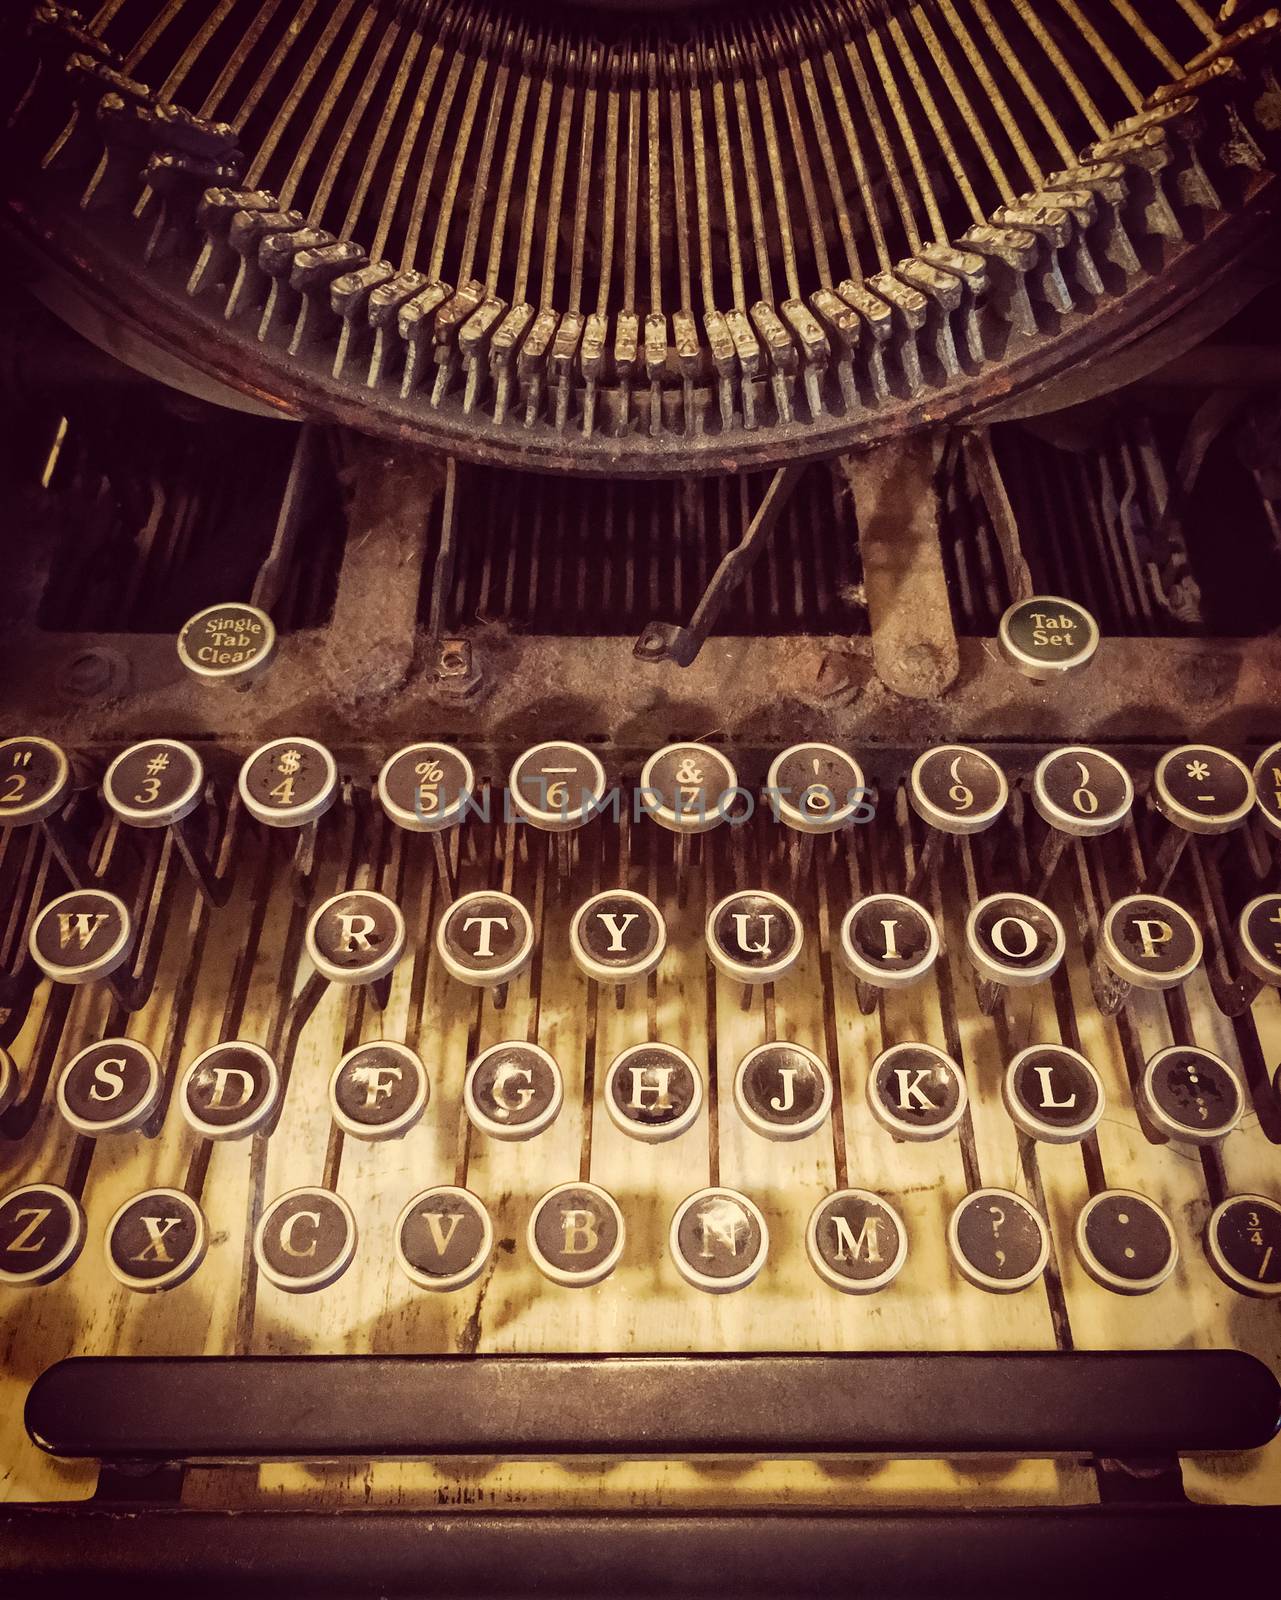 Keys of an old rusty typewriter by anikasalsera